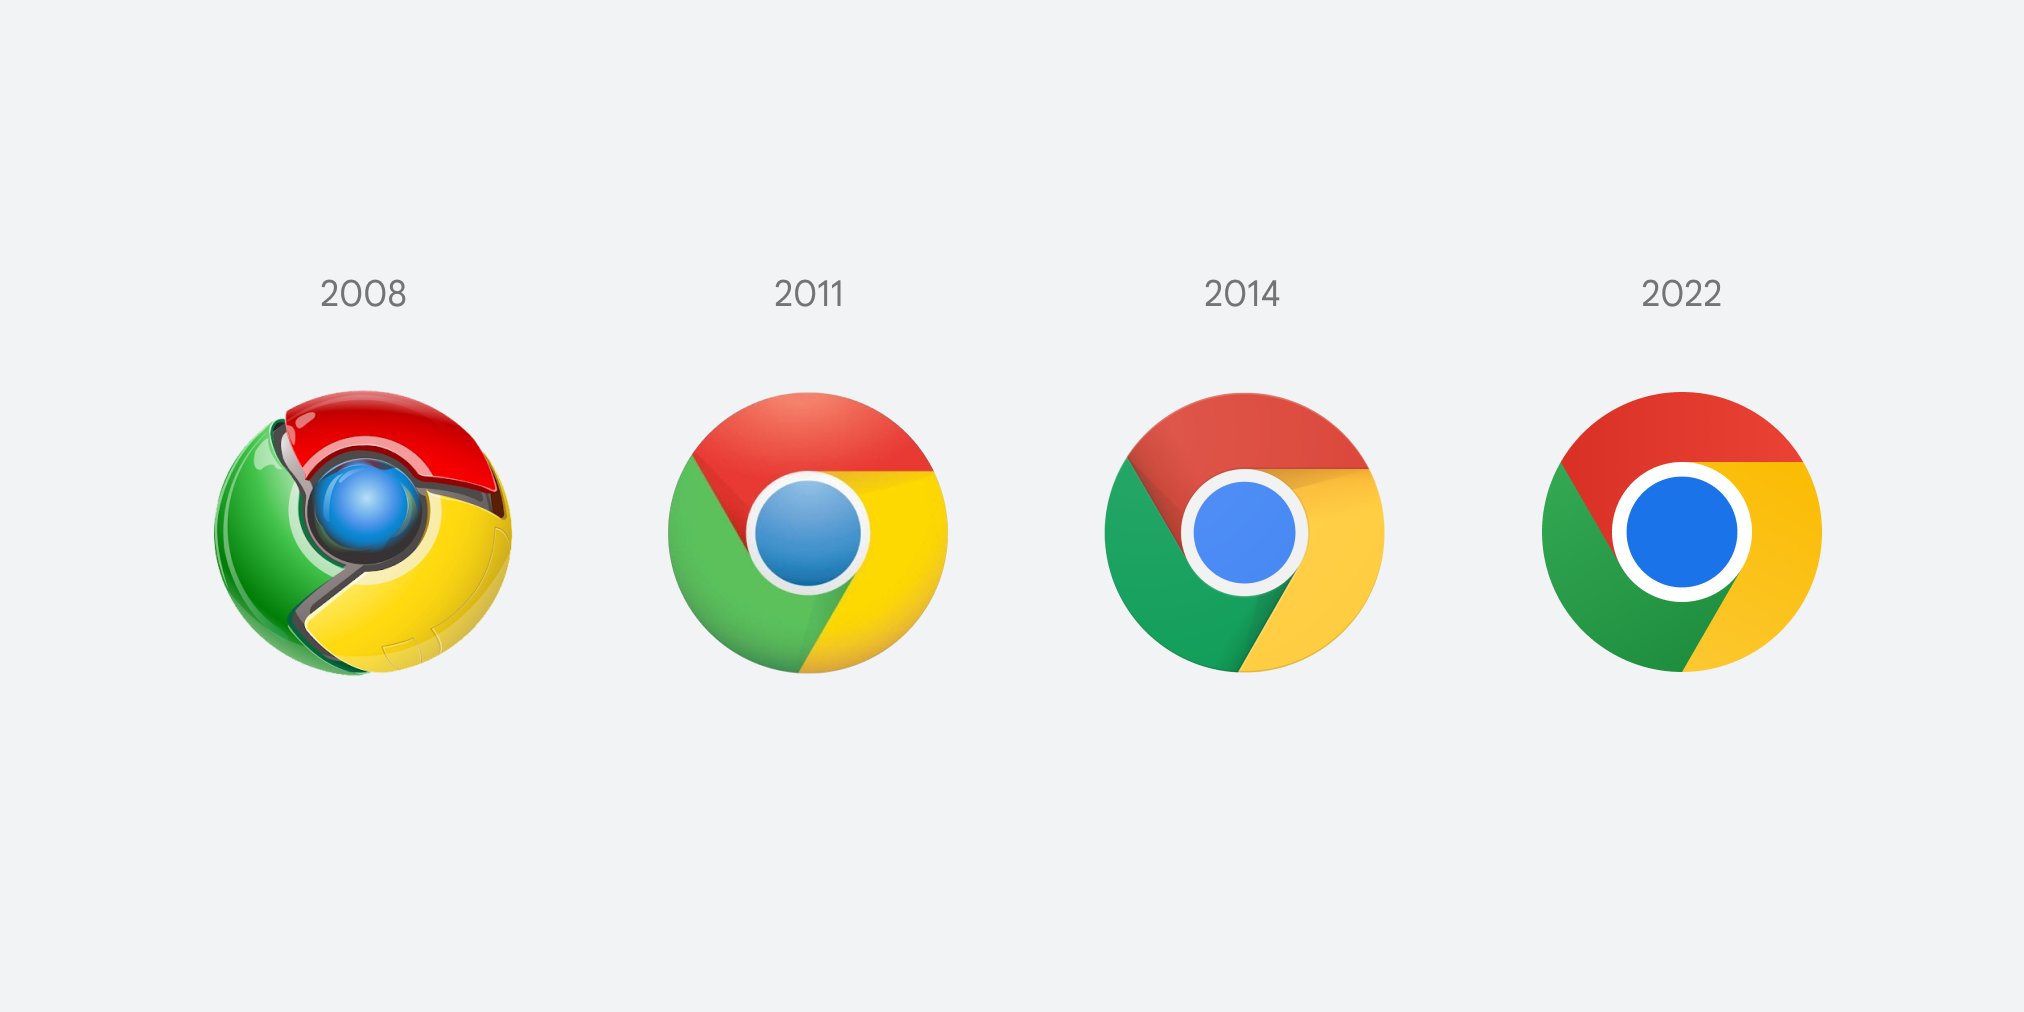 Chrome Kali Pertama Ubah Logo Setelah Delapan Tahun